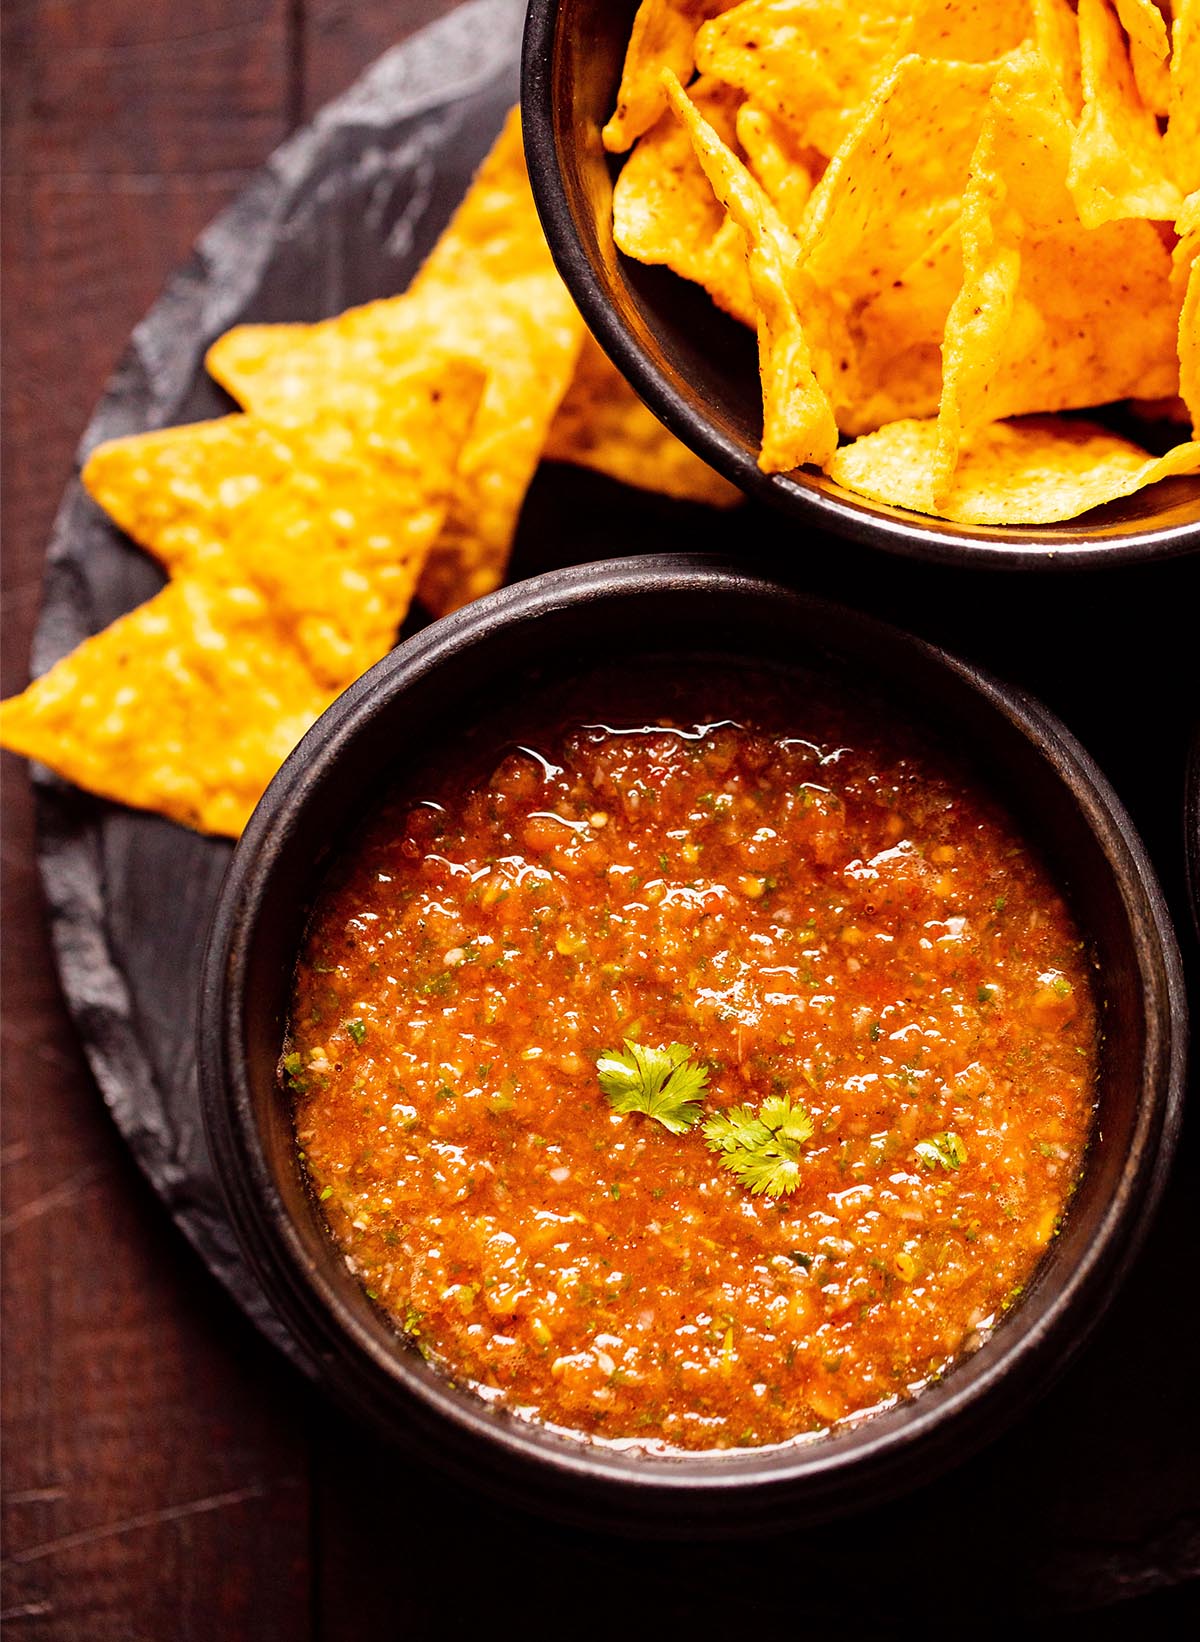 https://www.vegrecipesofindia.com/wp-content/uploads/2020/12/tomato-salsa.jpg